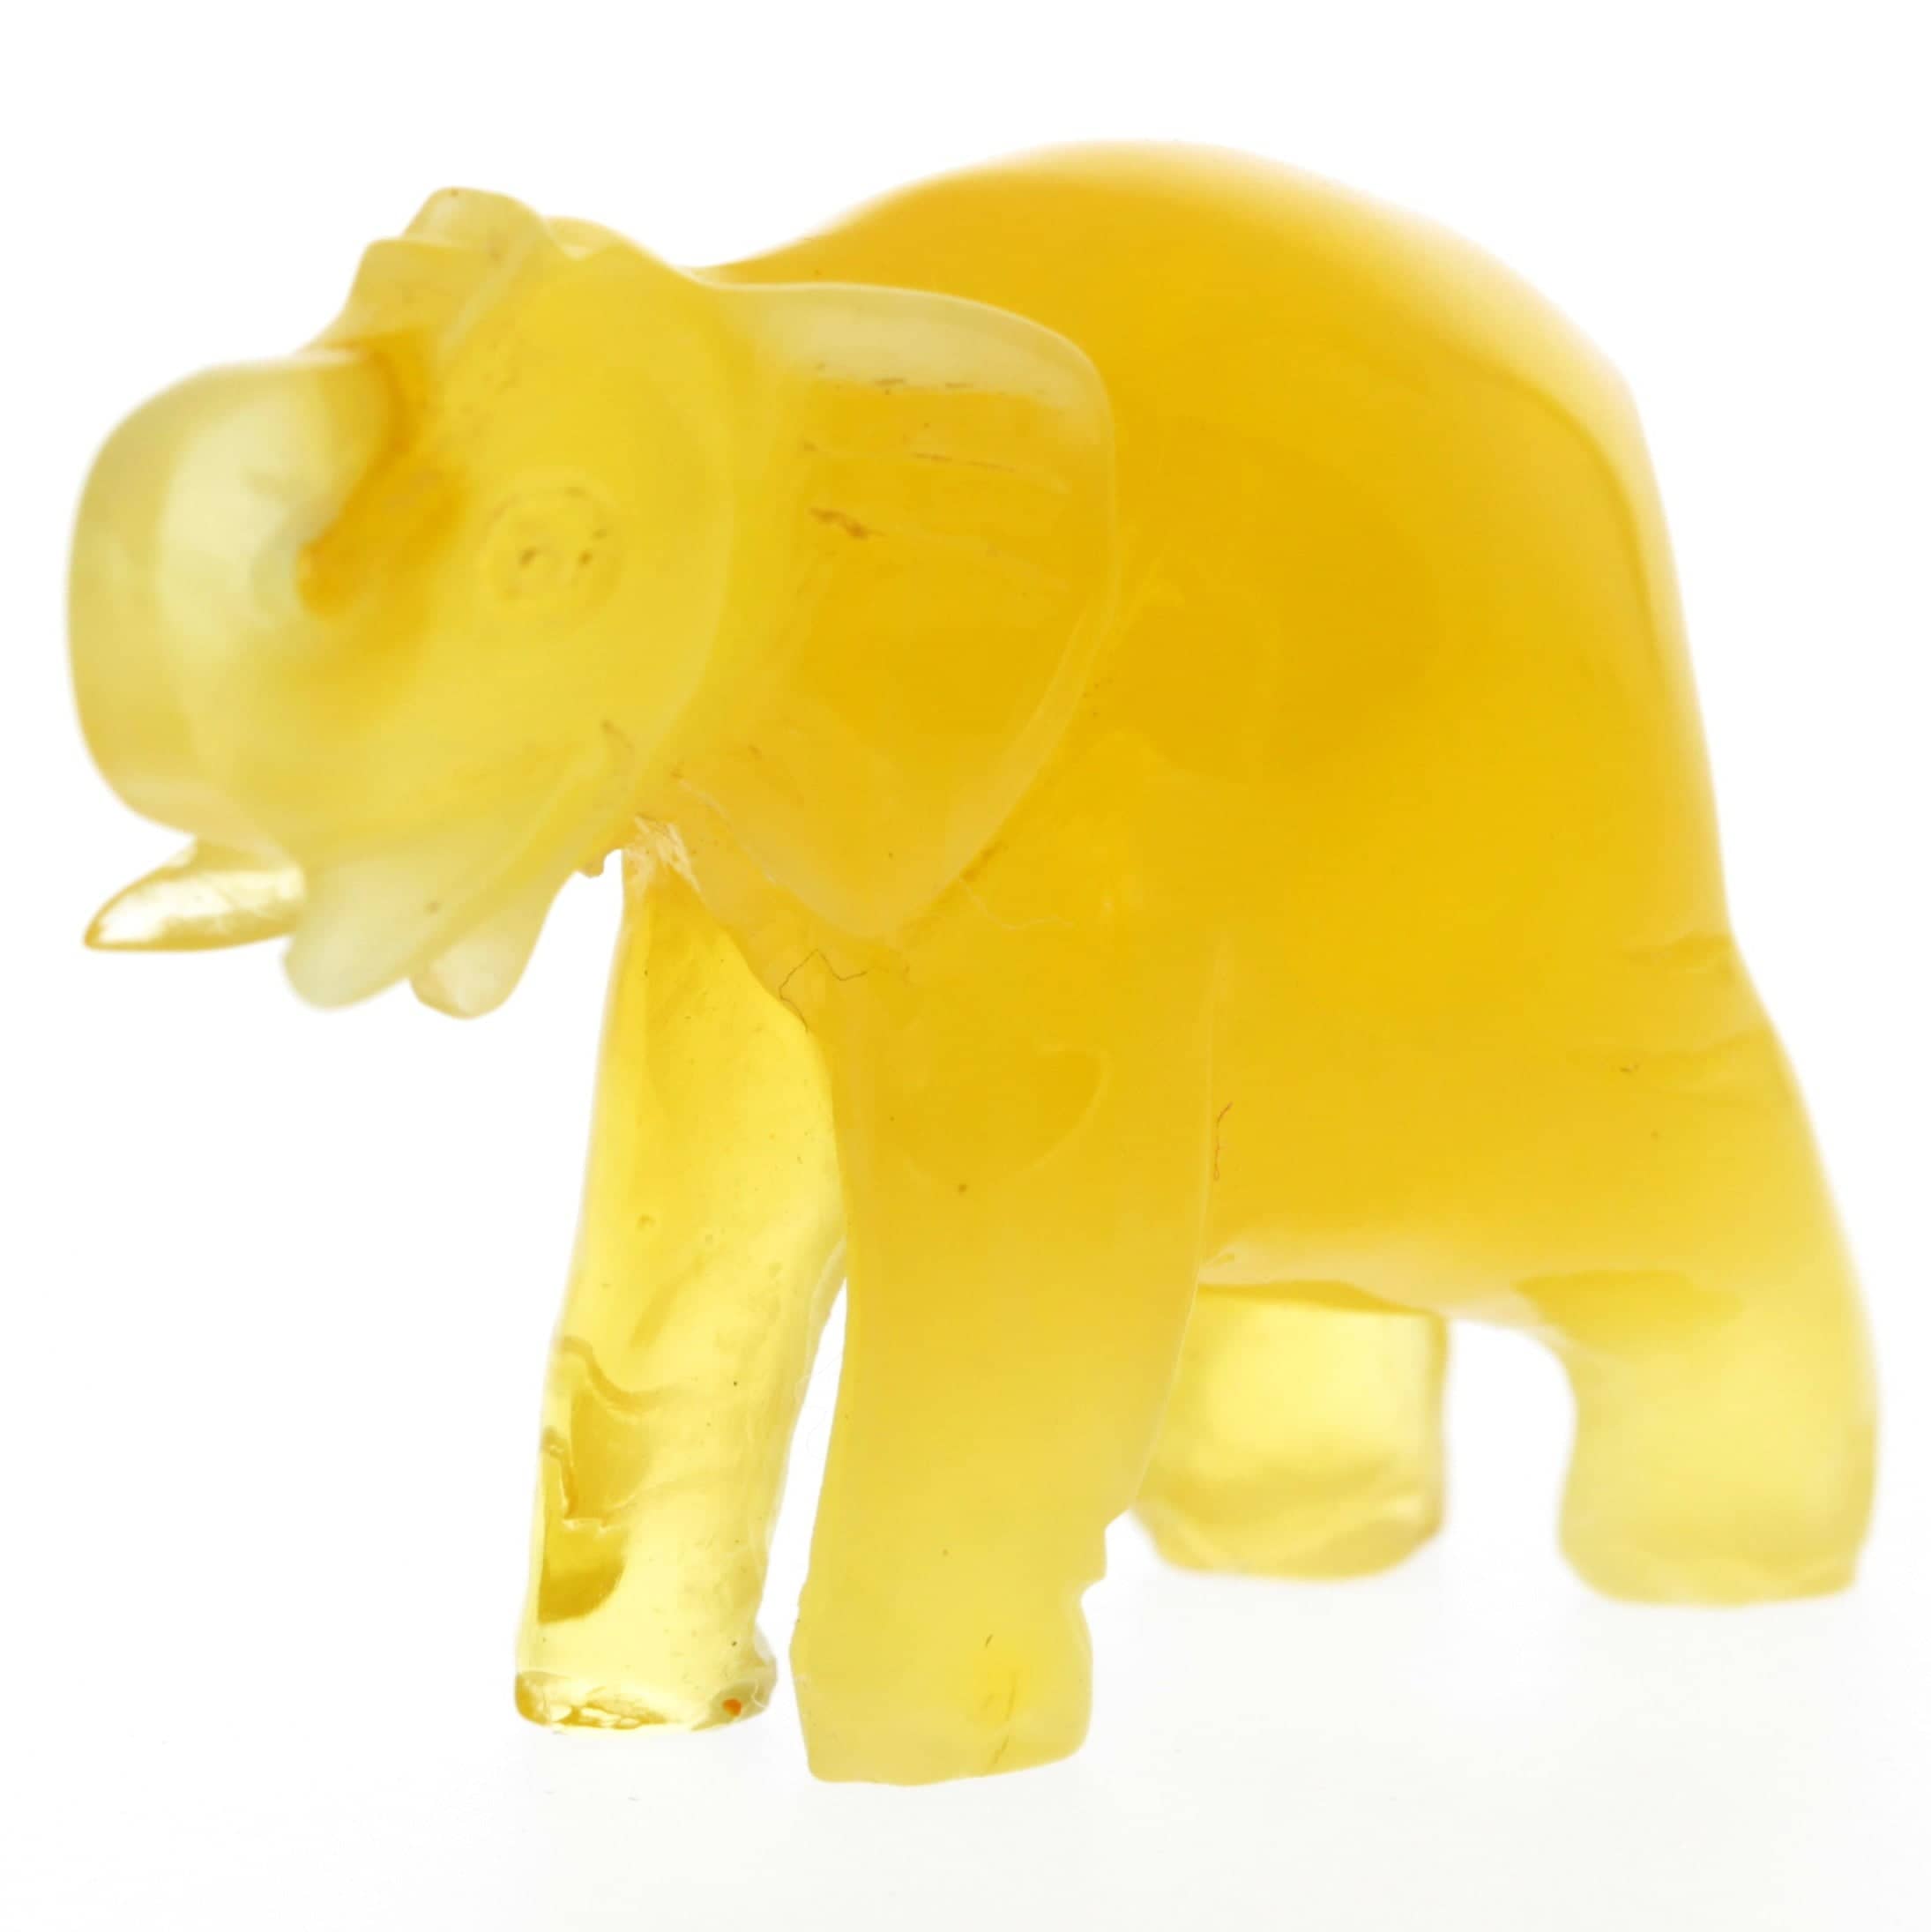 Figurine Superb Quality Handmade Natural Carved Elephant made of Genuine Baltic Amber - CRV96